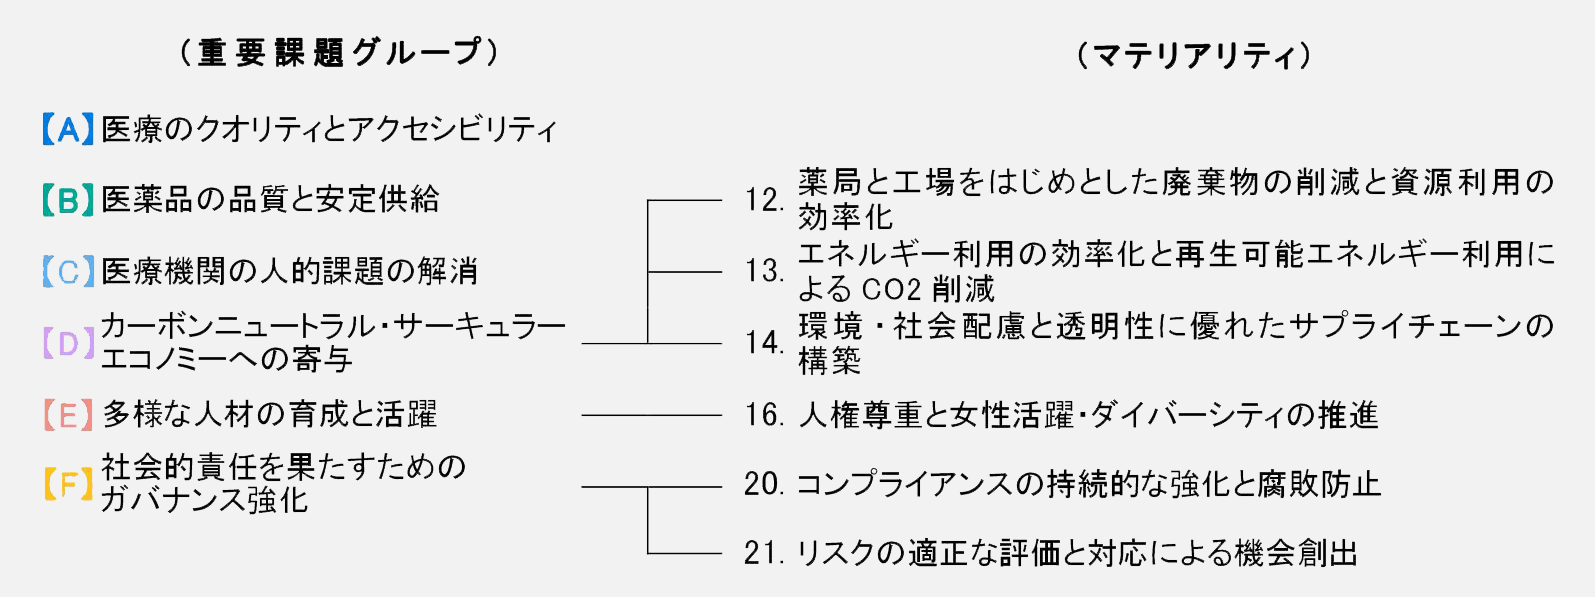 日本調剤グループの特定したマテリアリティ